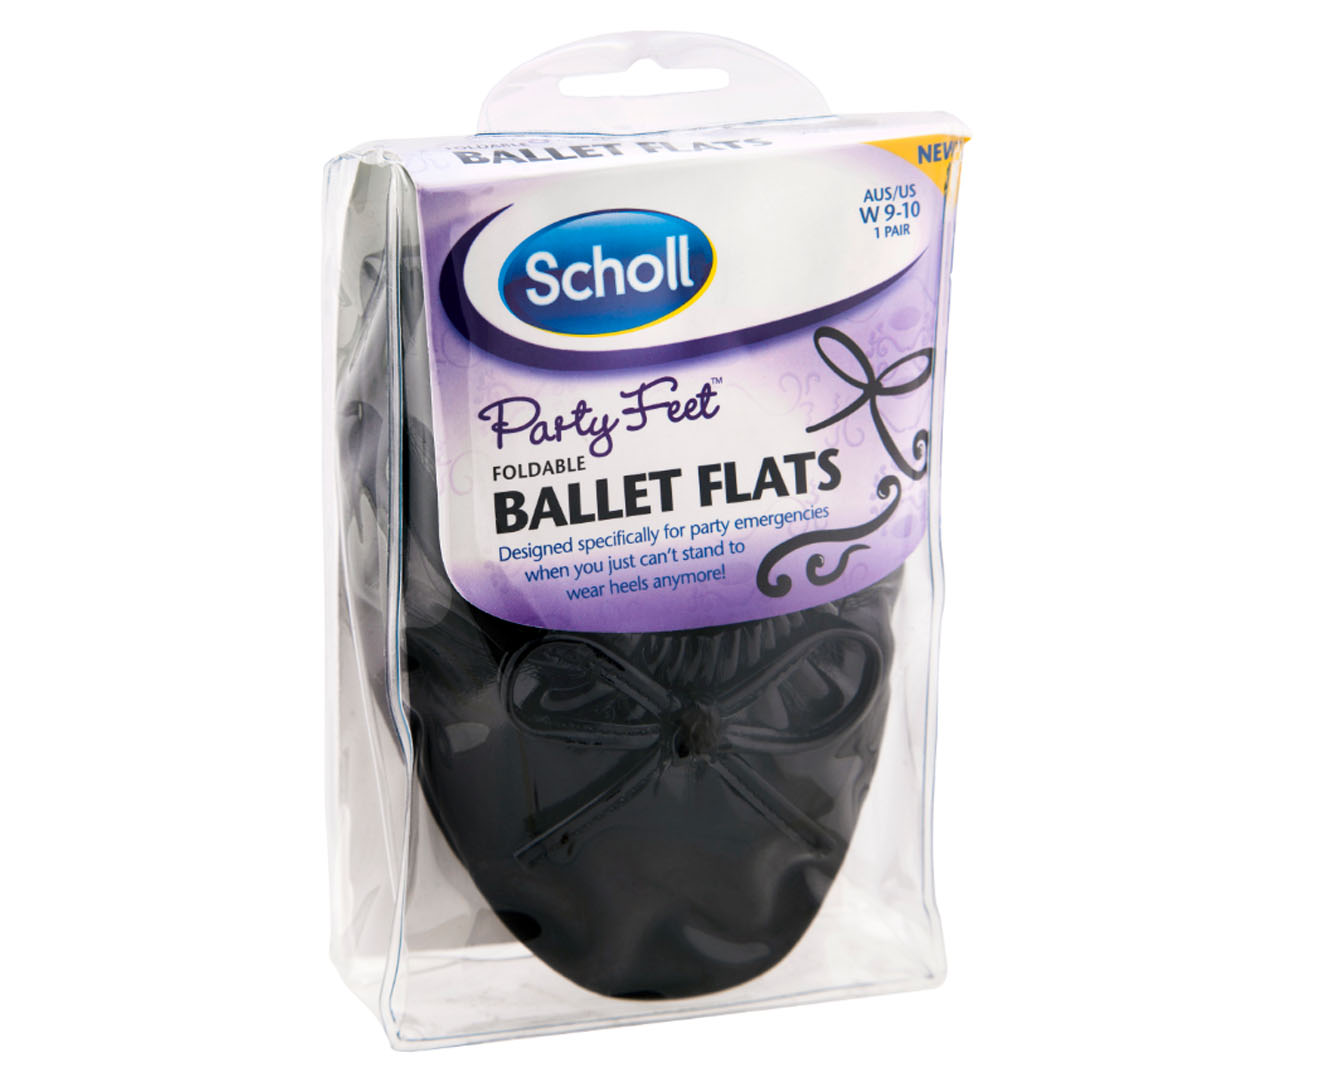 scholl party feet ballet flats australia